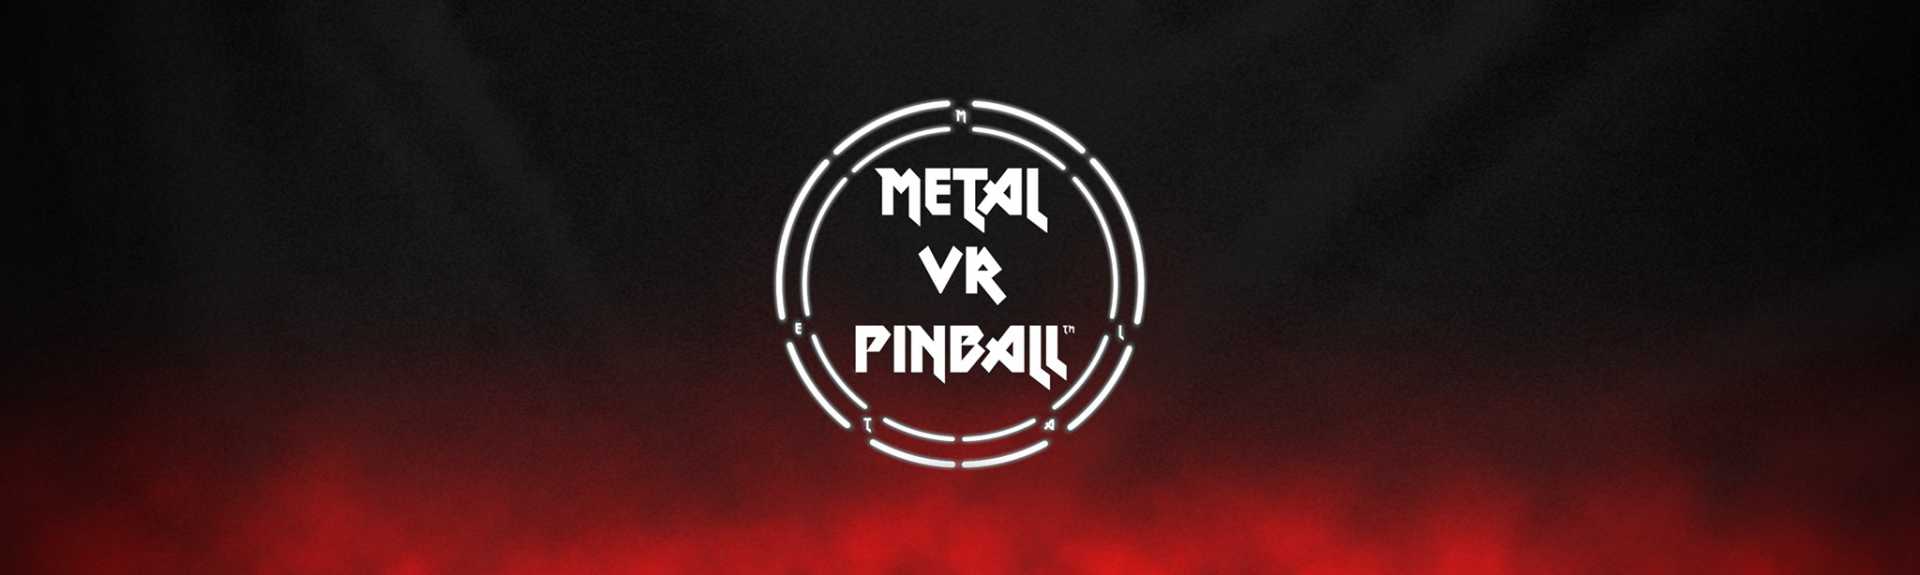 METAL VR PINBALL